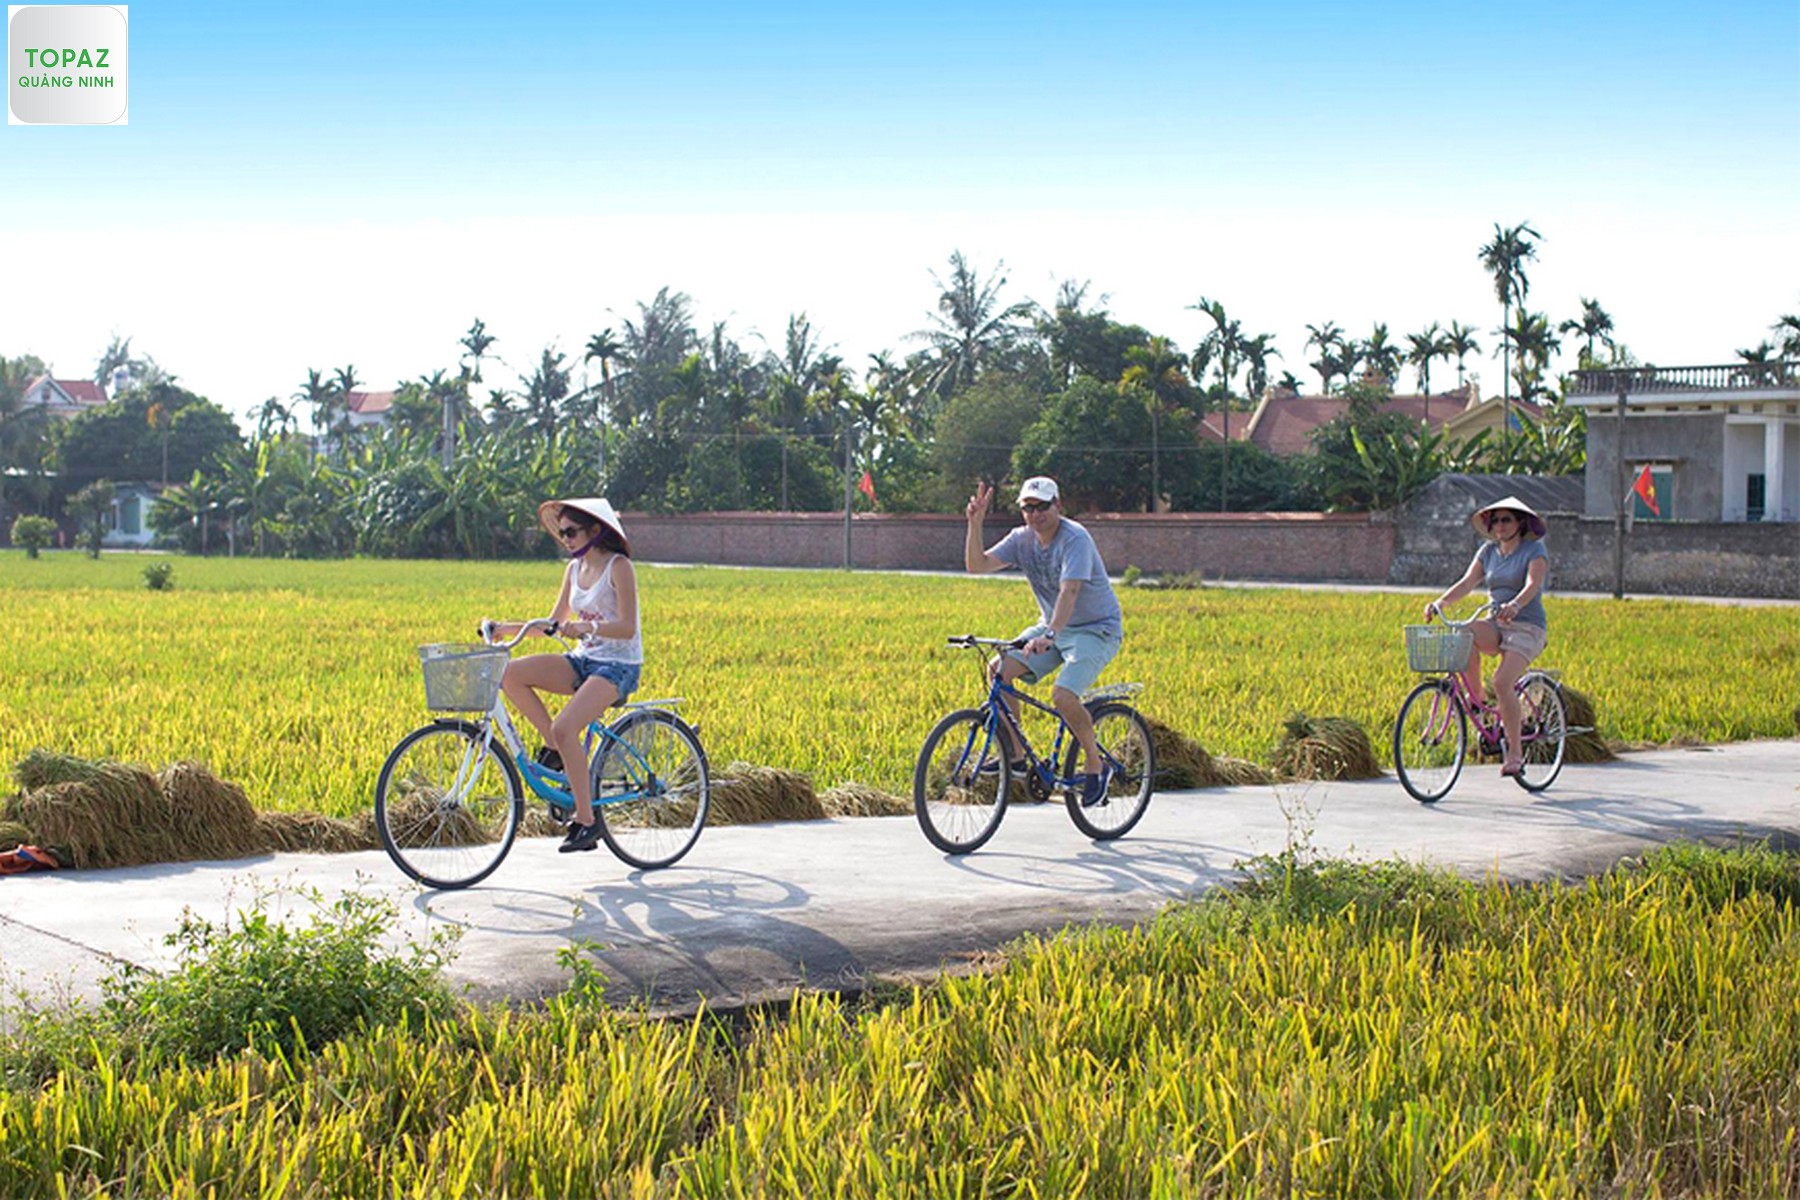 Du khách sẽ được đạp xe đạp đi tham quan làng cũng như những di tích lịch sử - văn hóa nổi tiếng tại địa phương